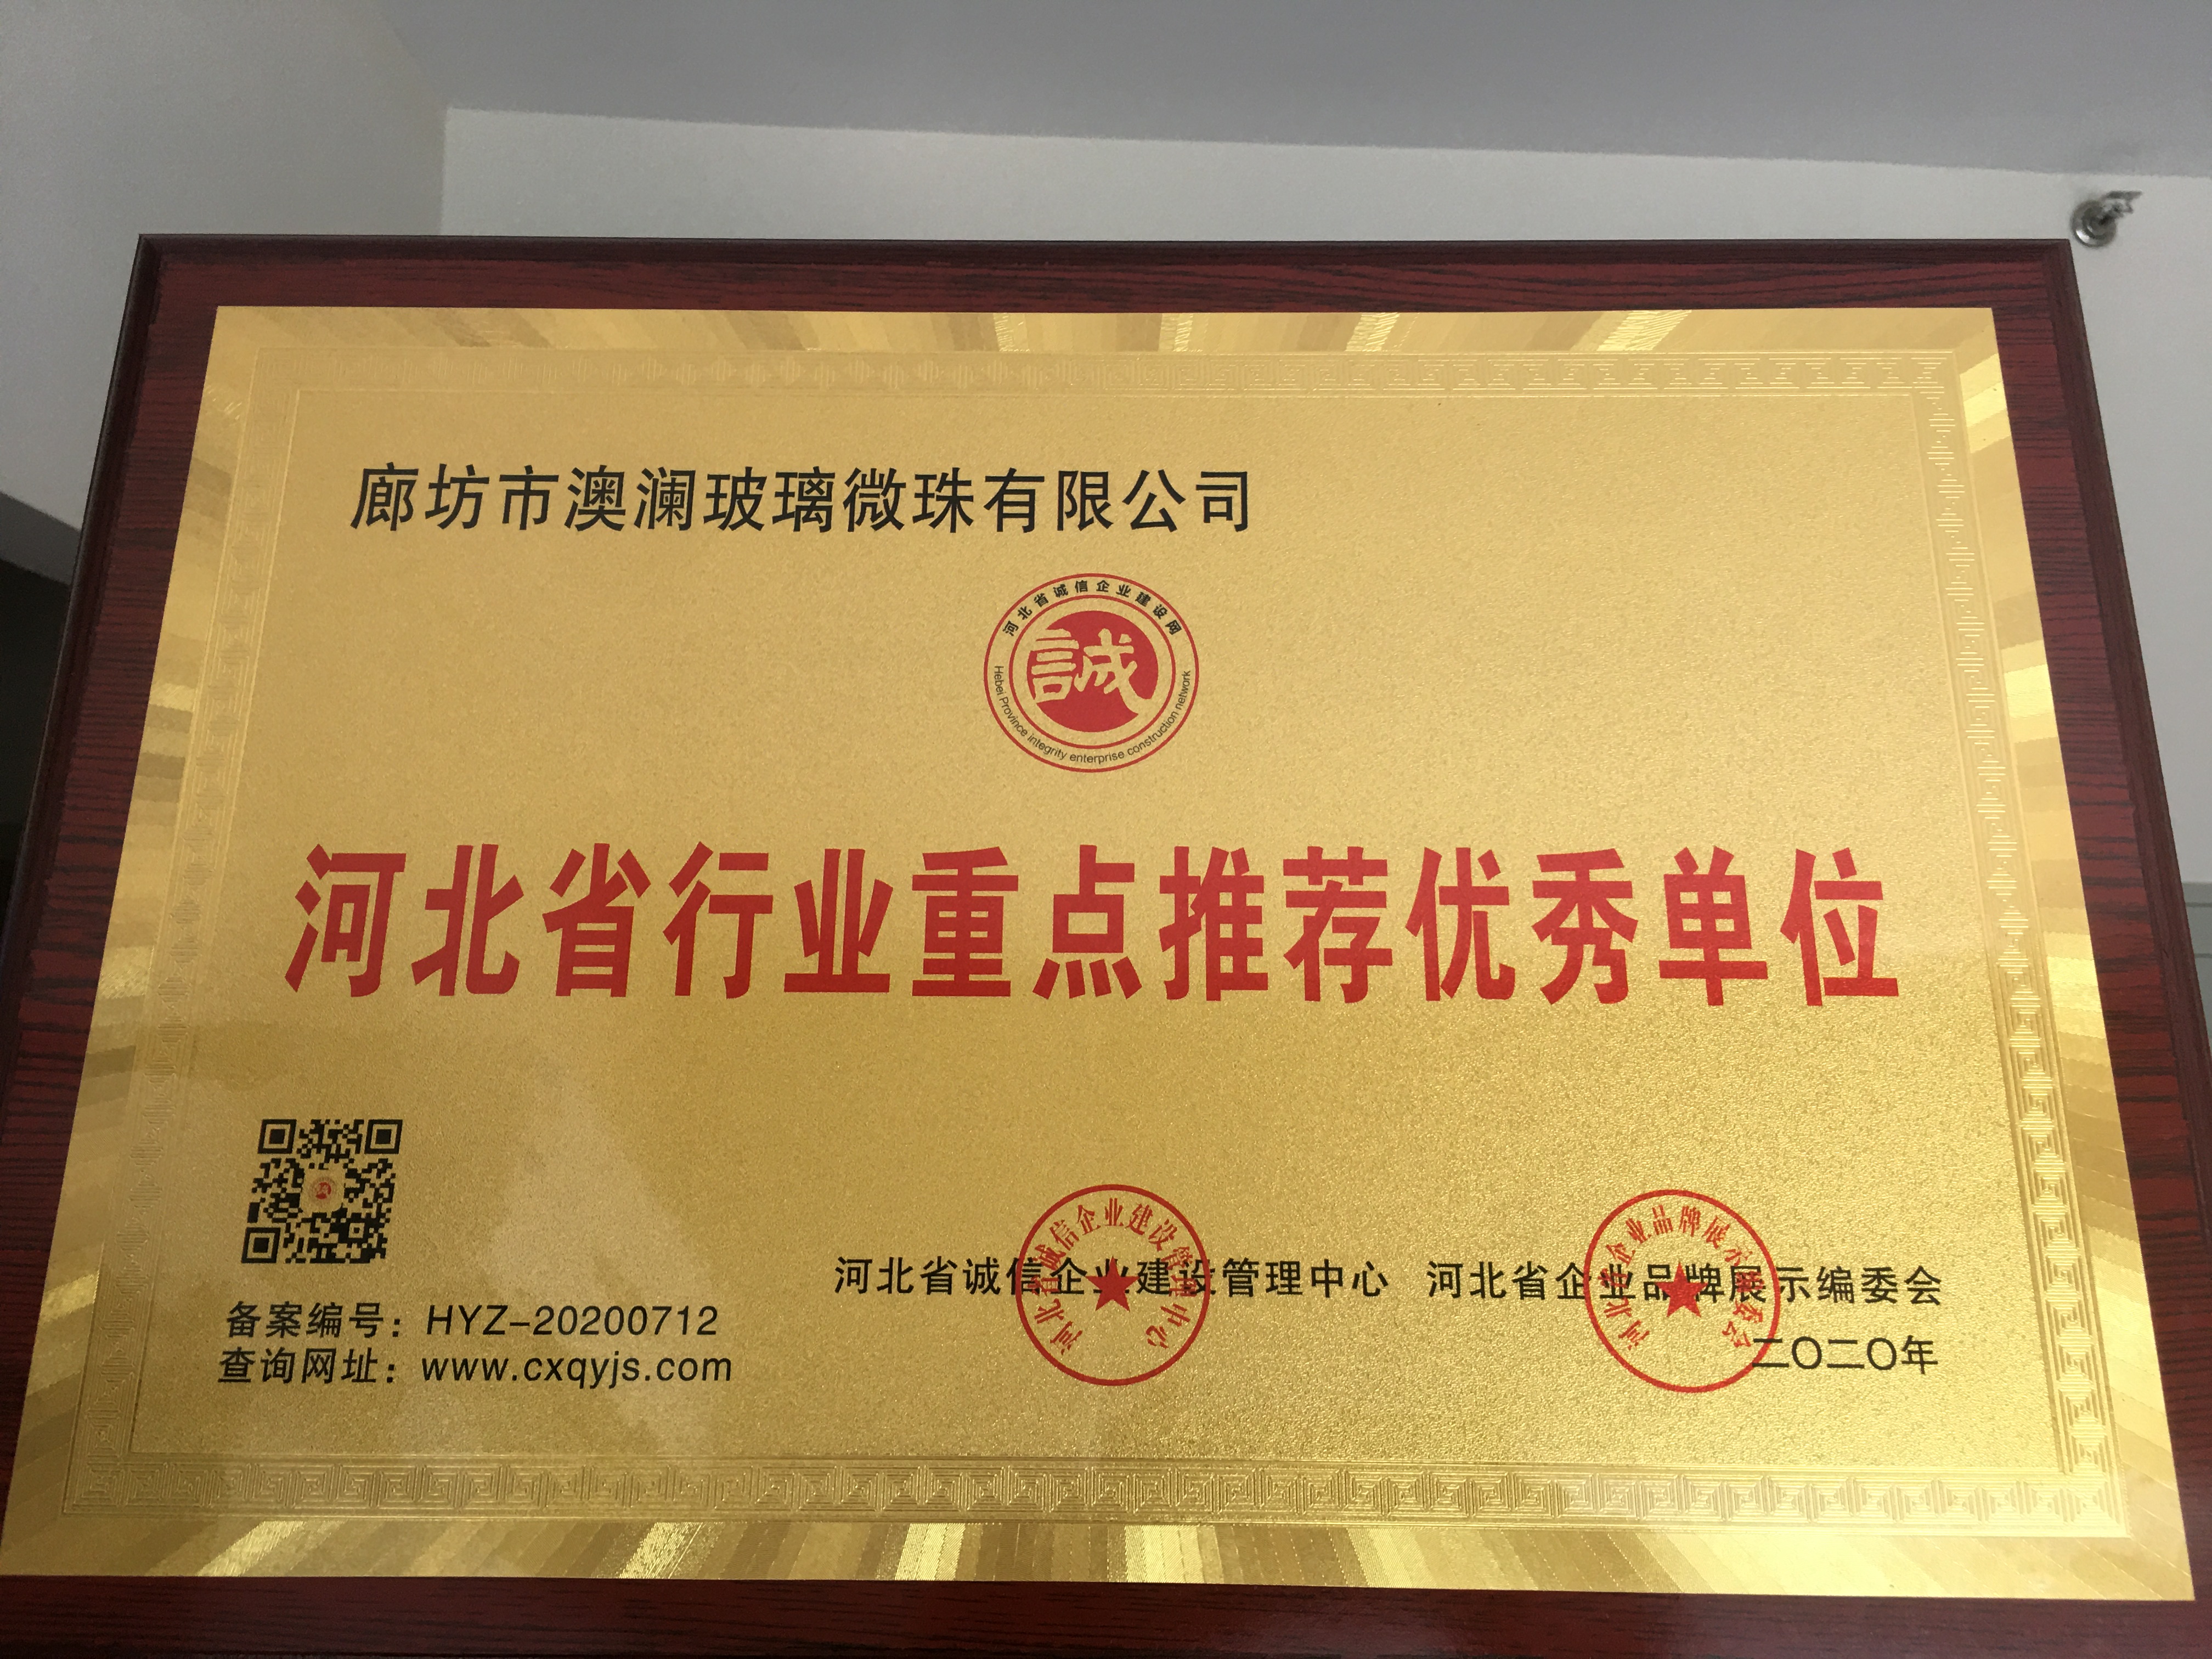 澳澜玻璃珠被评为河北省行业重点推荐优秀单位并授予牌匾